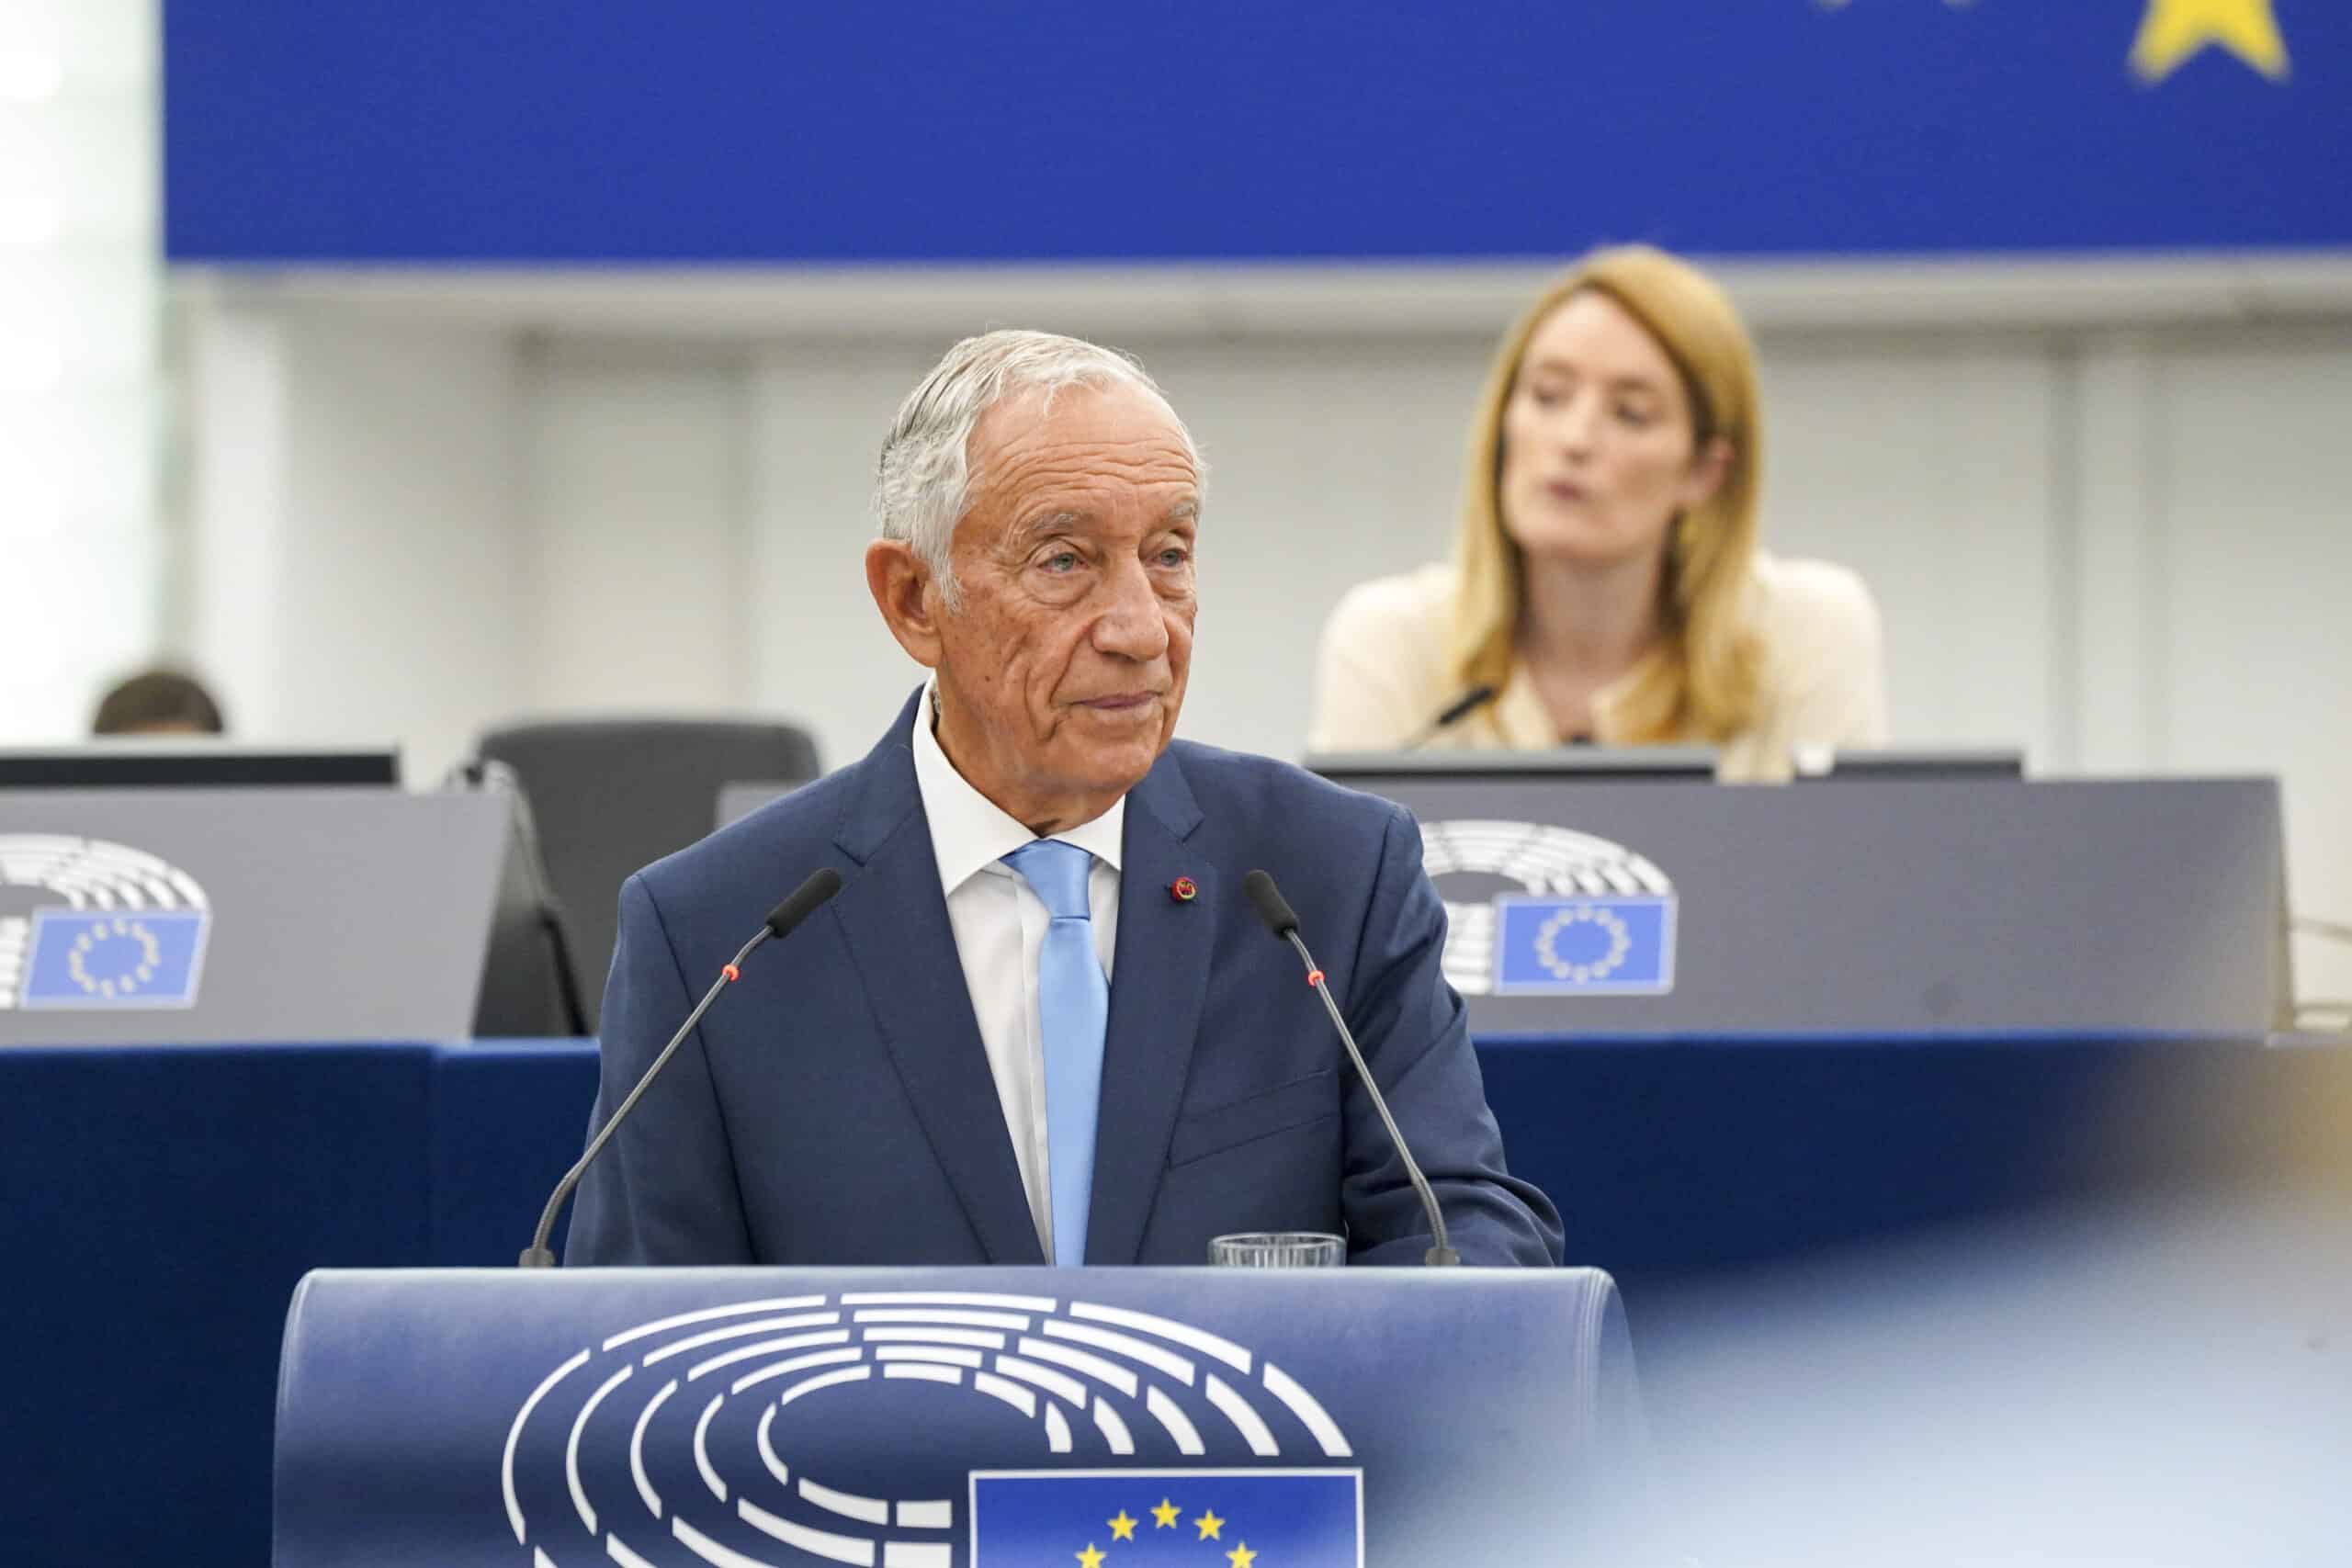 Přečtete si více ze článku Portugalský prezident v Evropském parlamentu vyzval k jednotě, varoval před zanedbáním Afriky